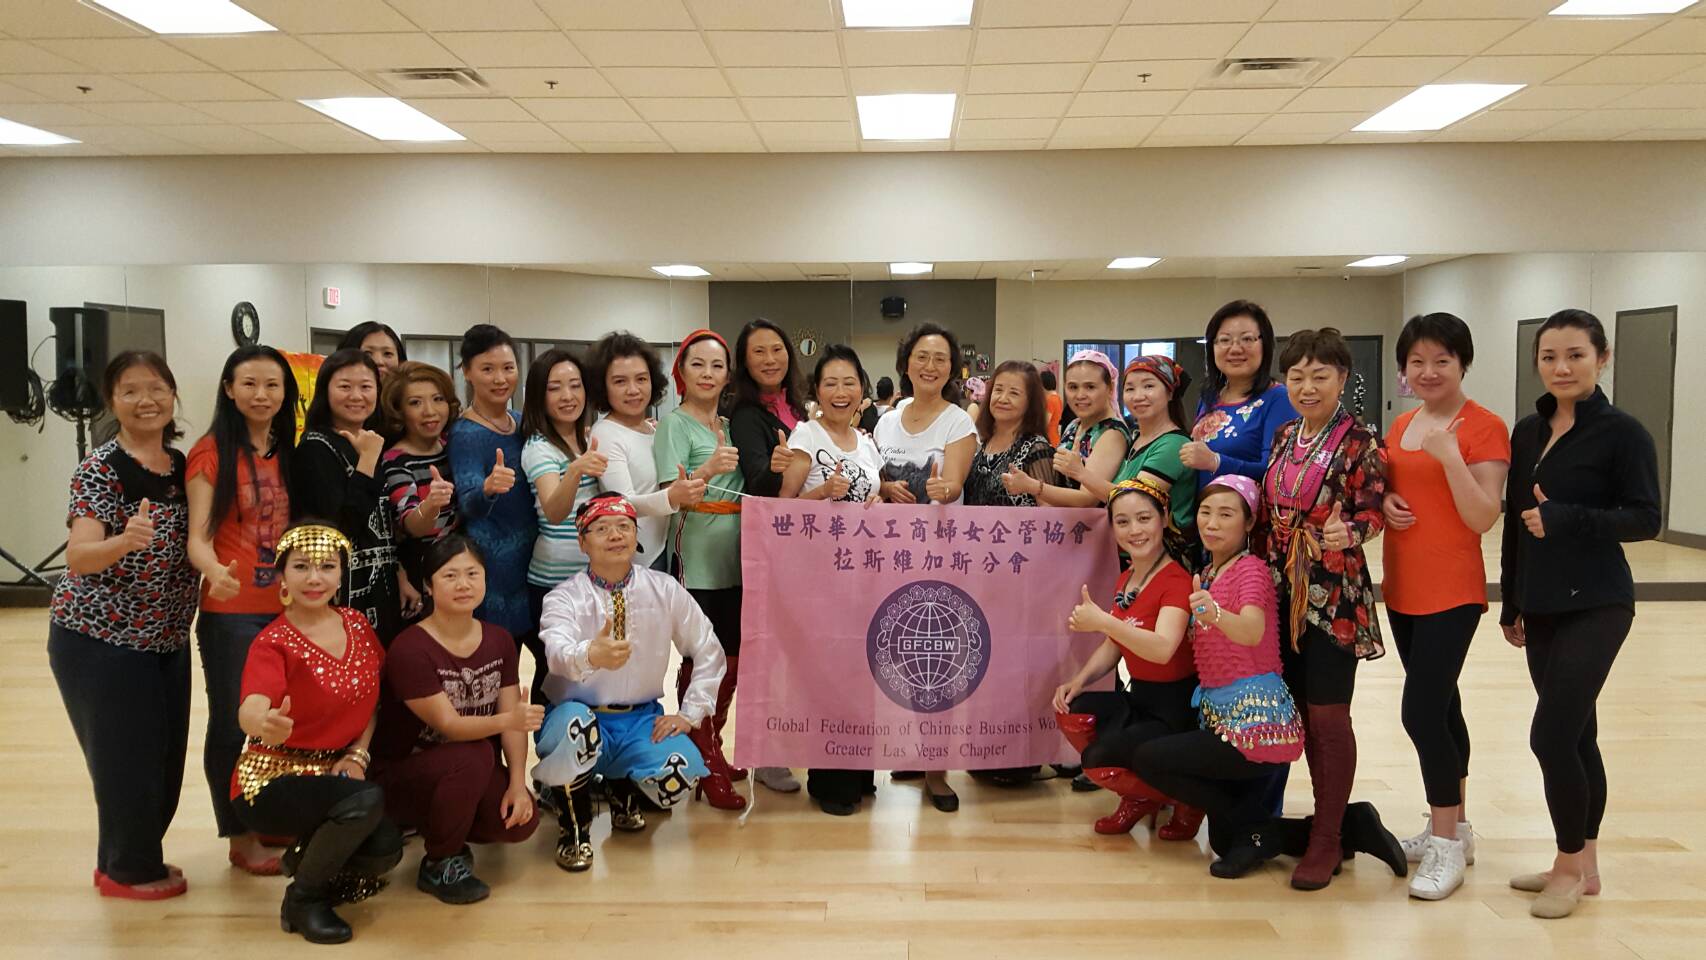 世界華人工商婦女企管協會拉斯维加斯分會慶祝母親節及慶生活動